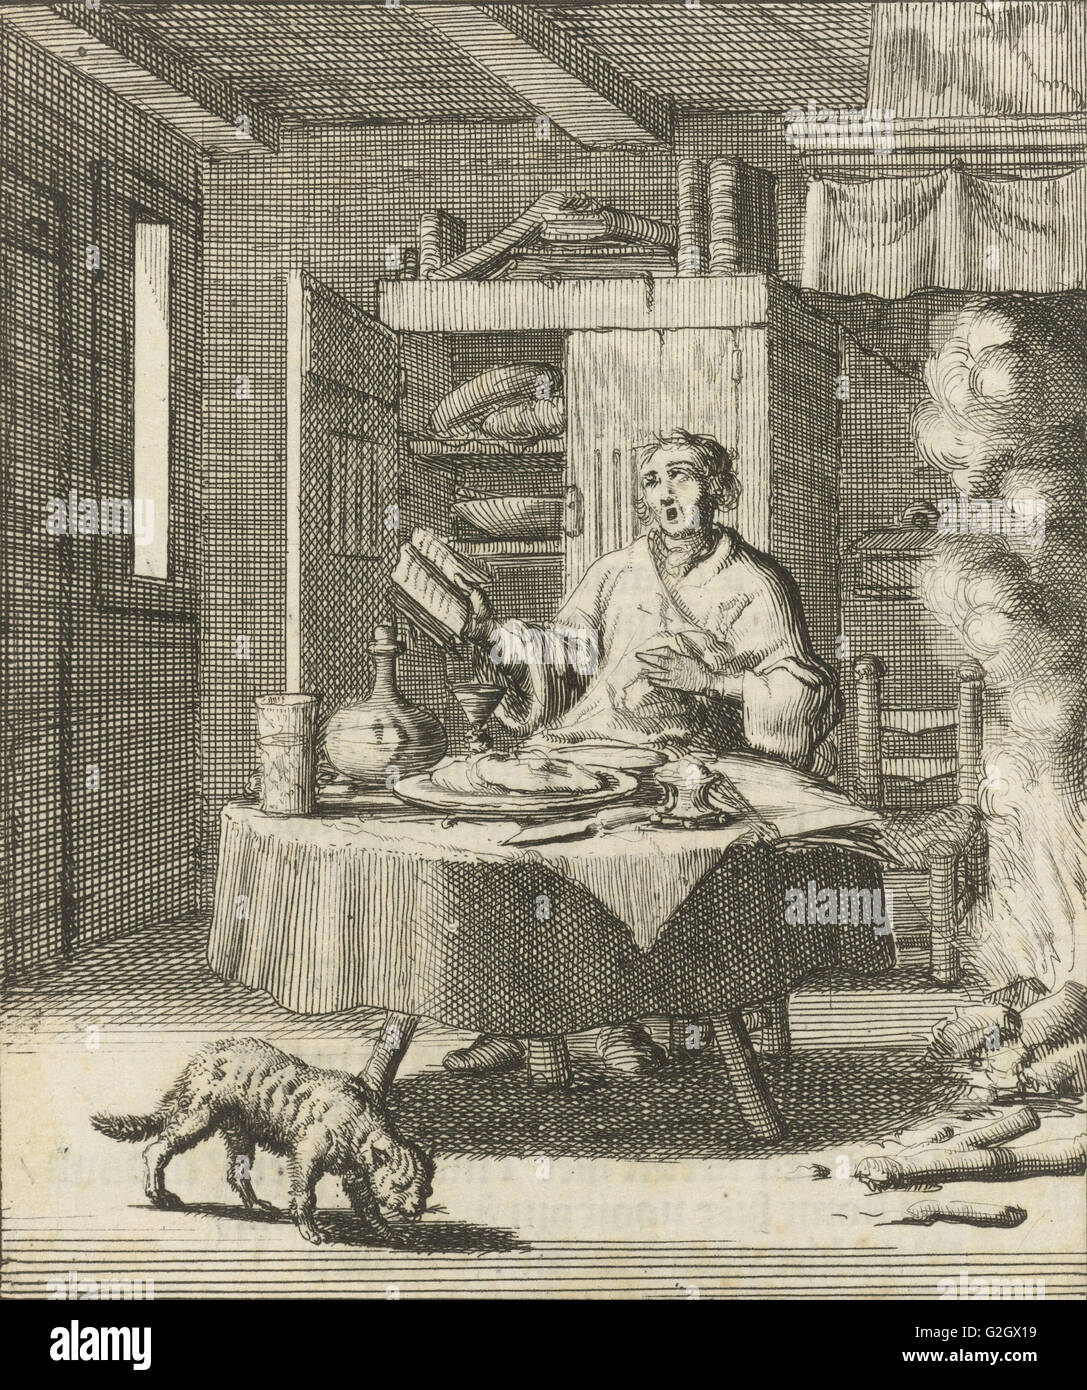 L'écrivain William Shutter est assis à une table et chante après les repas d'un Psautier, Jan Luyken, Gerbrandt Schagen, 1687 Banque D'Images